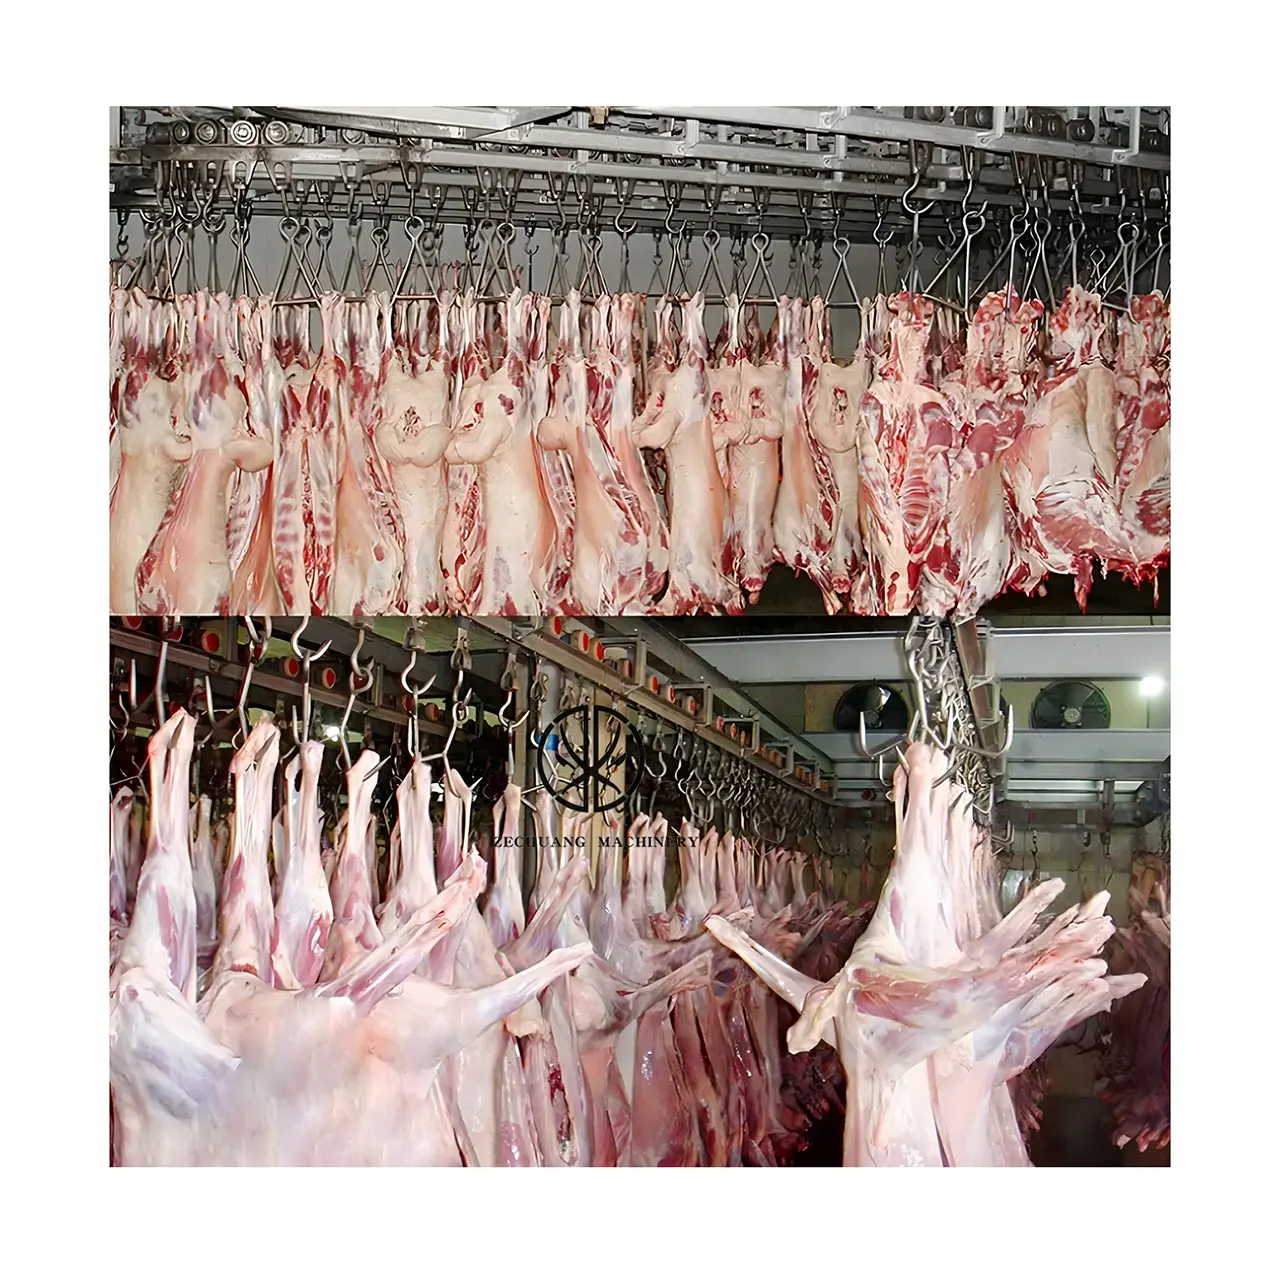 मुस्लिम हलाल बकरी वध घर उपकरण मांस प्रसंस्करण शव परिवहन और भंडारण संप्रेषित द्रुतशीतन कमरे के लिए रेल भेड़